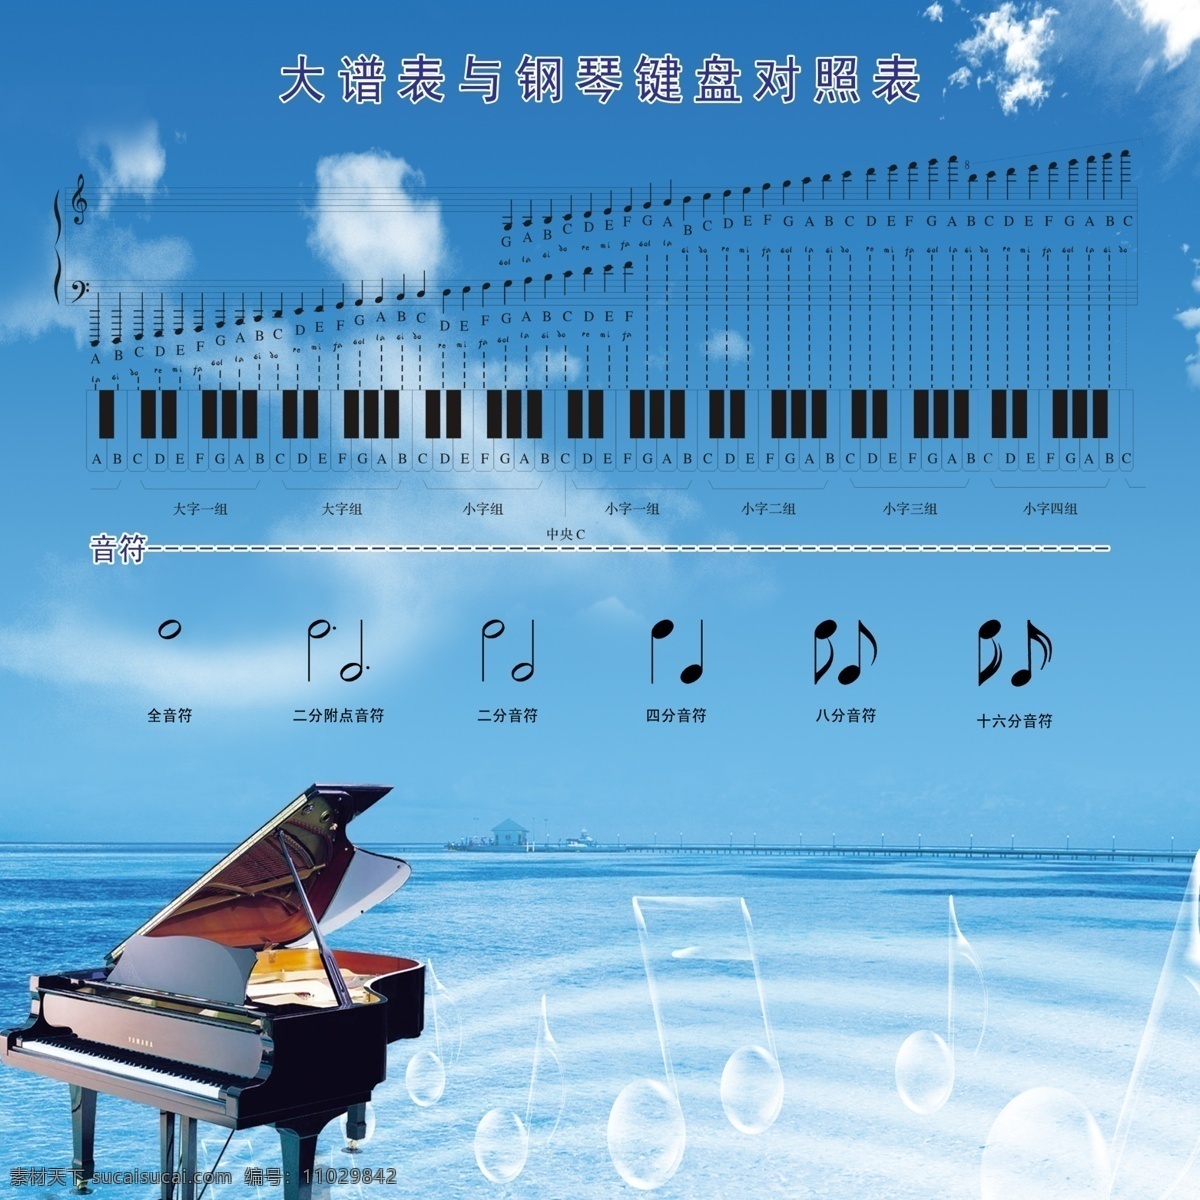 大 谱表 钢琴 键盘 对照 蓝天 大海 音符 钢琴键 白云 广告设计模板 源文件